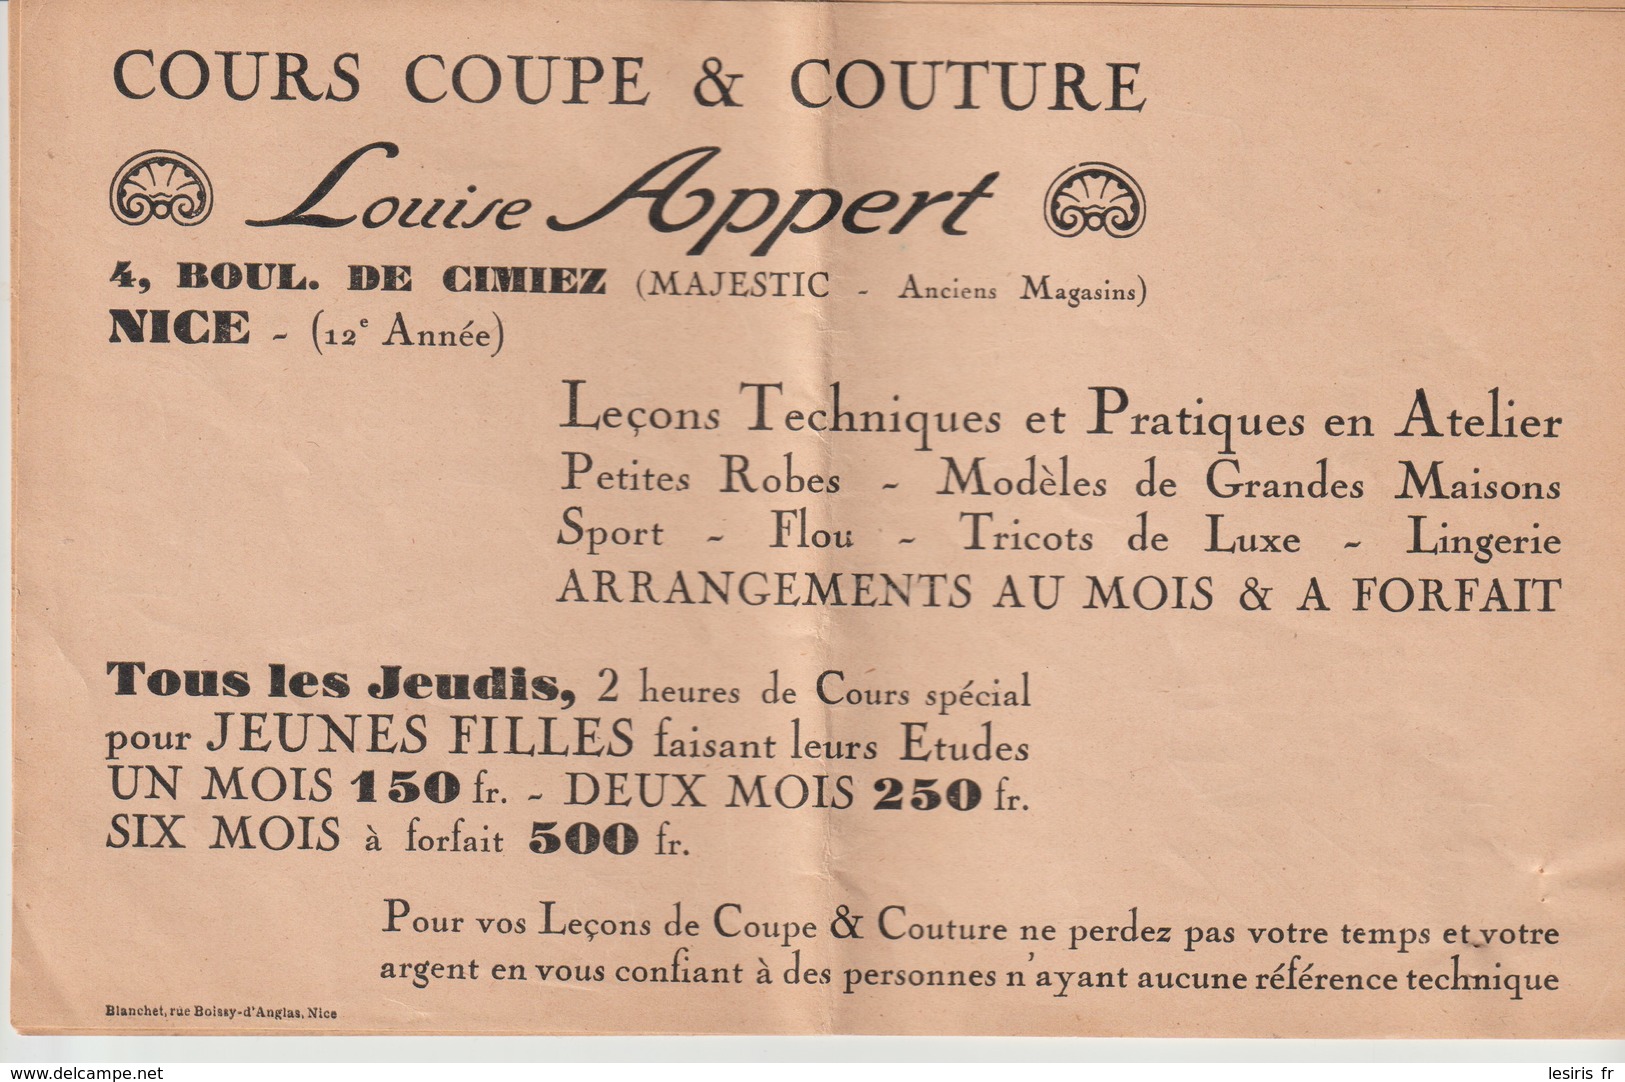 LOUISE APPERT - COURS COUPE & COUTURE - NICE - 4 Bd DE CIMIEZ - MAJESTIC - BLANCHET - 12° ANNEE - Reclame